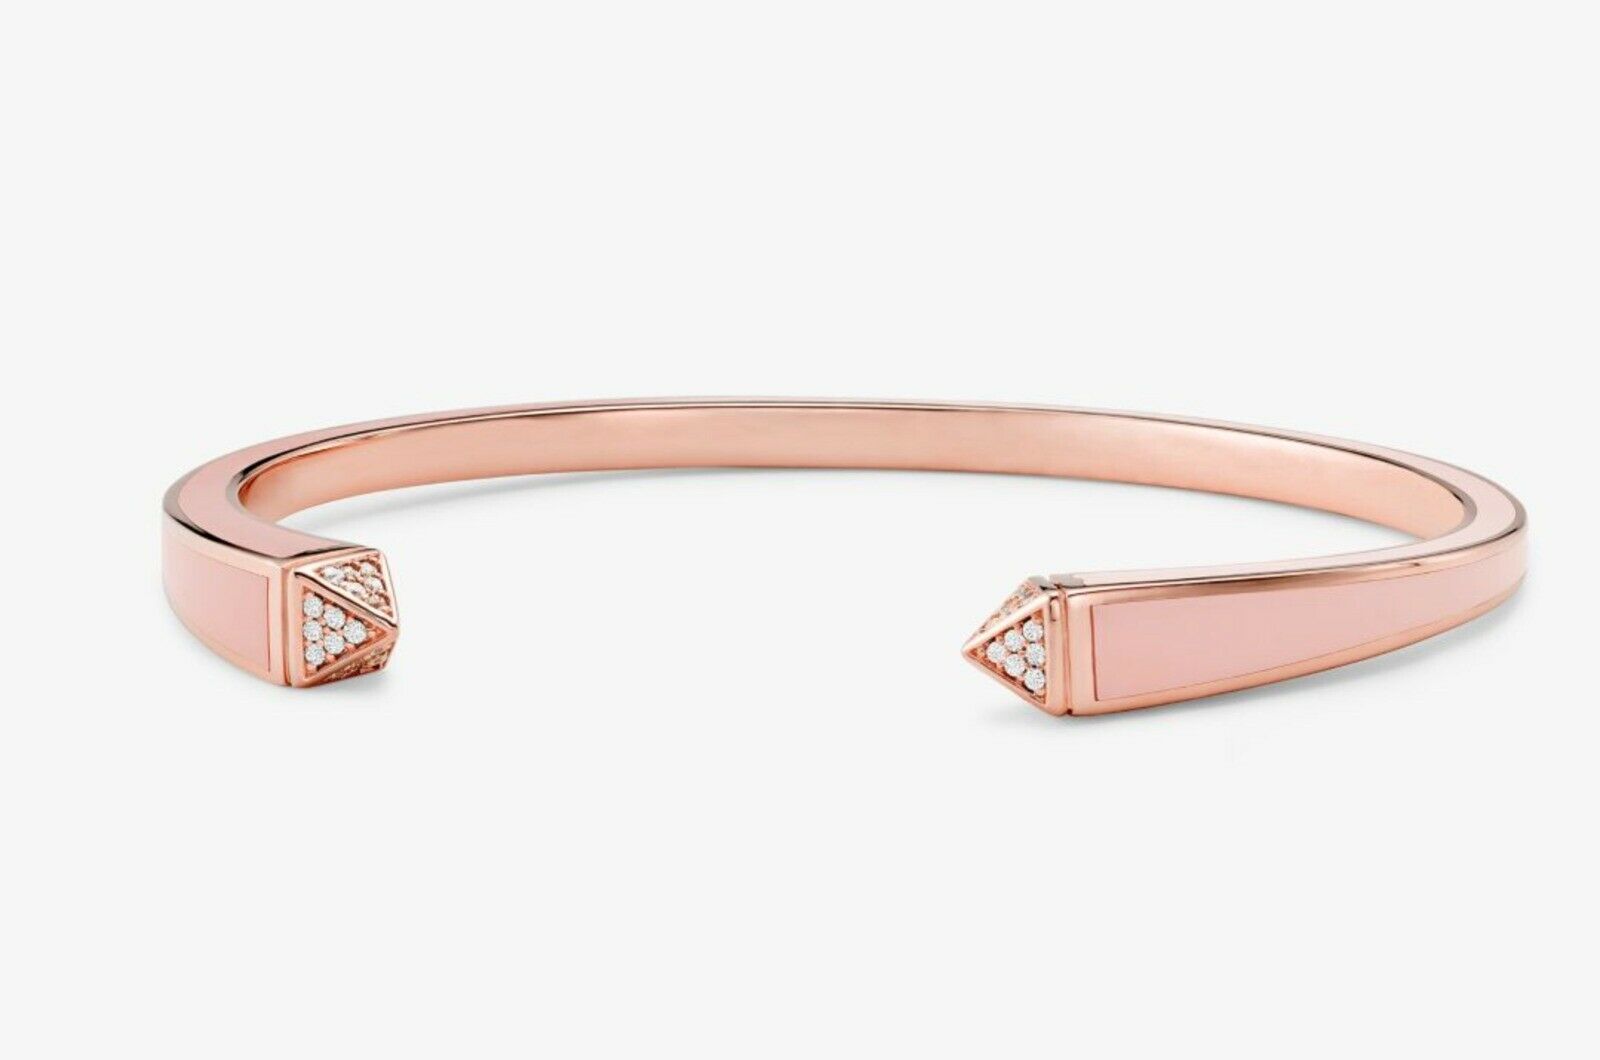 Michael Kors 14K Rose Gold-Plated SSilver & Pavé Studded Cuff Bracelet BNWT $225 - $79.75